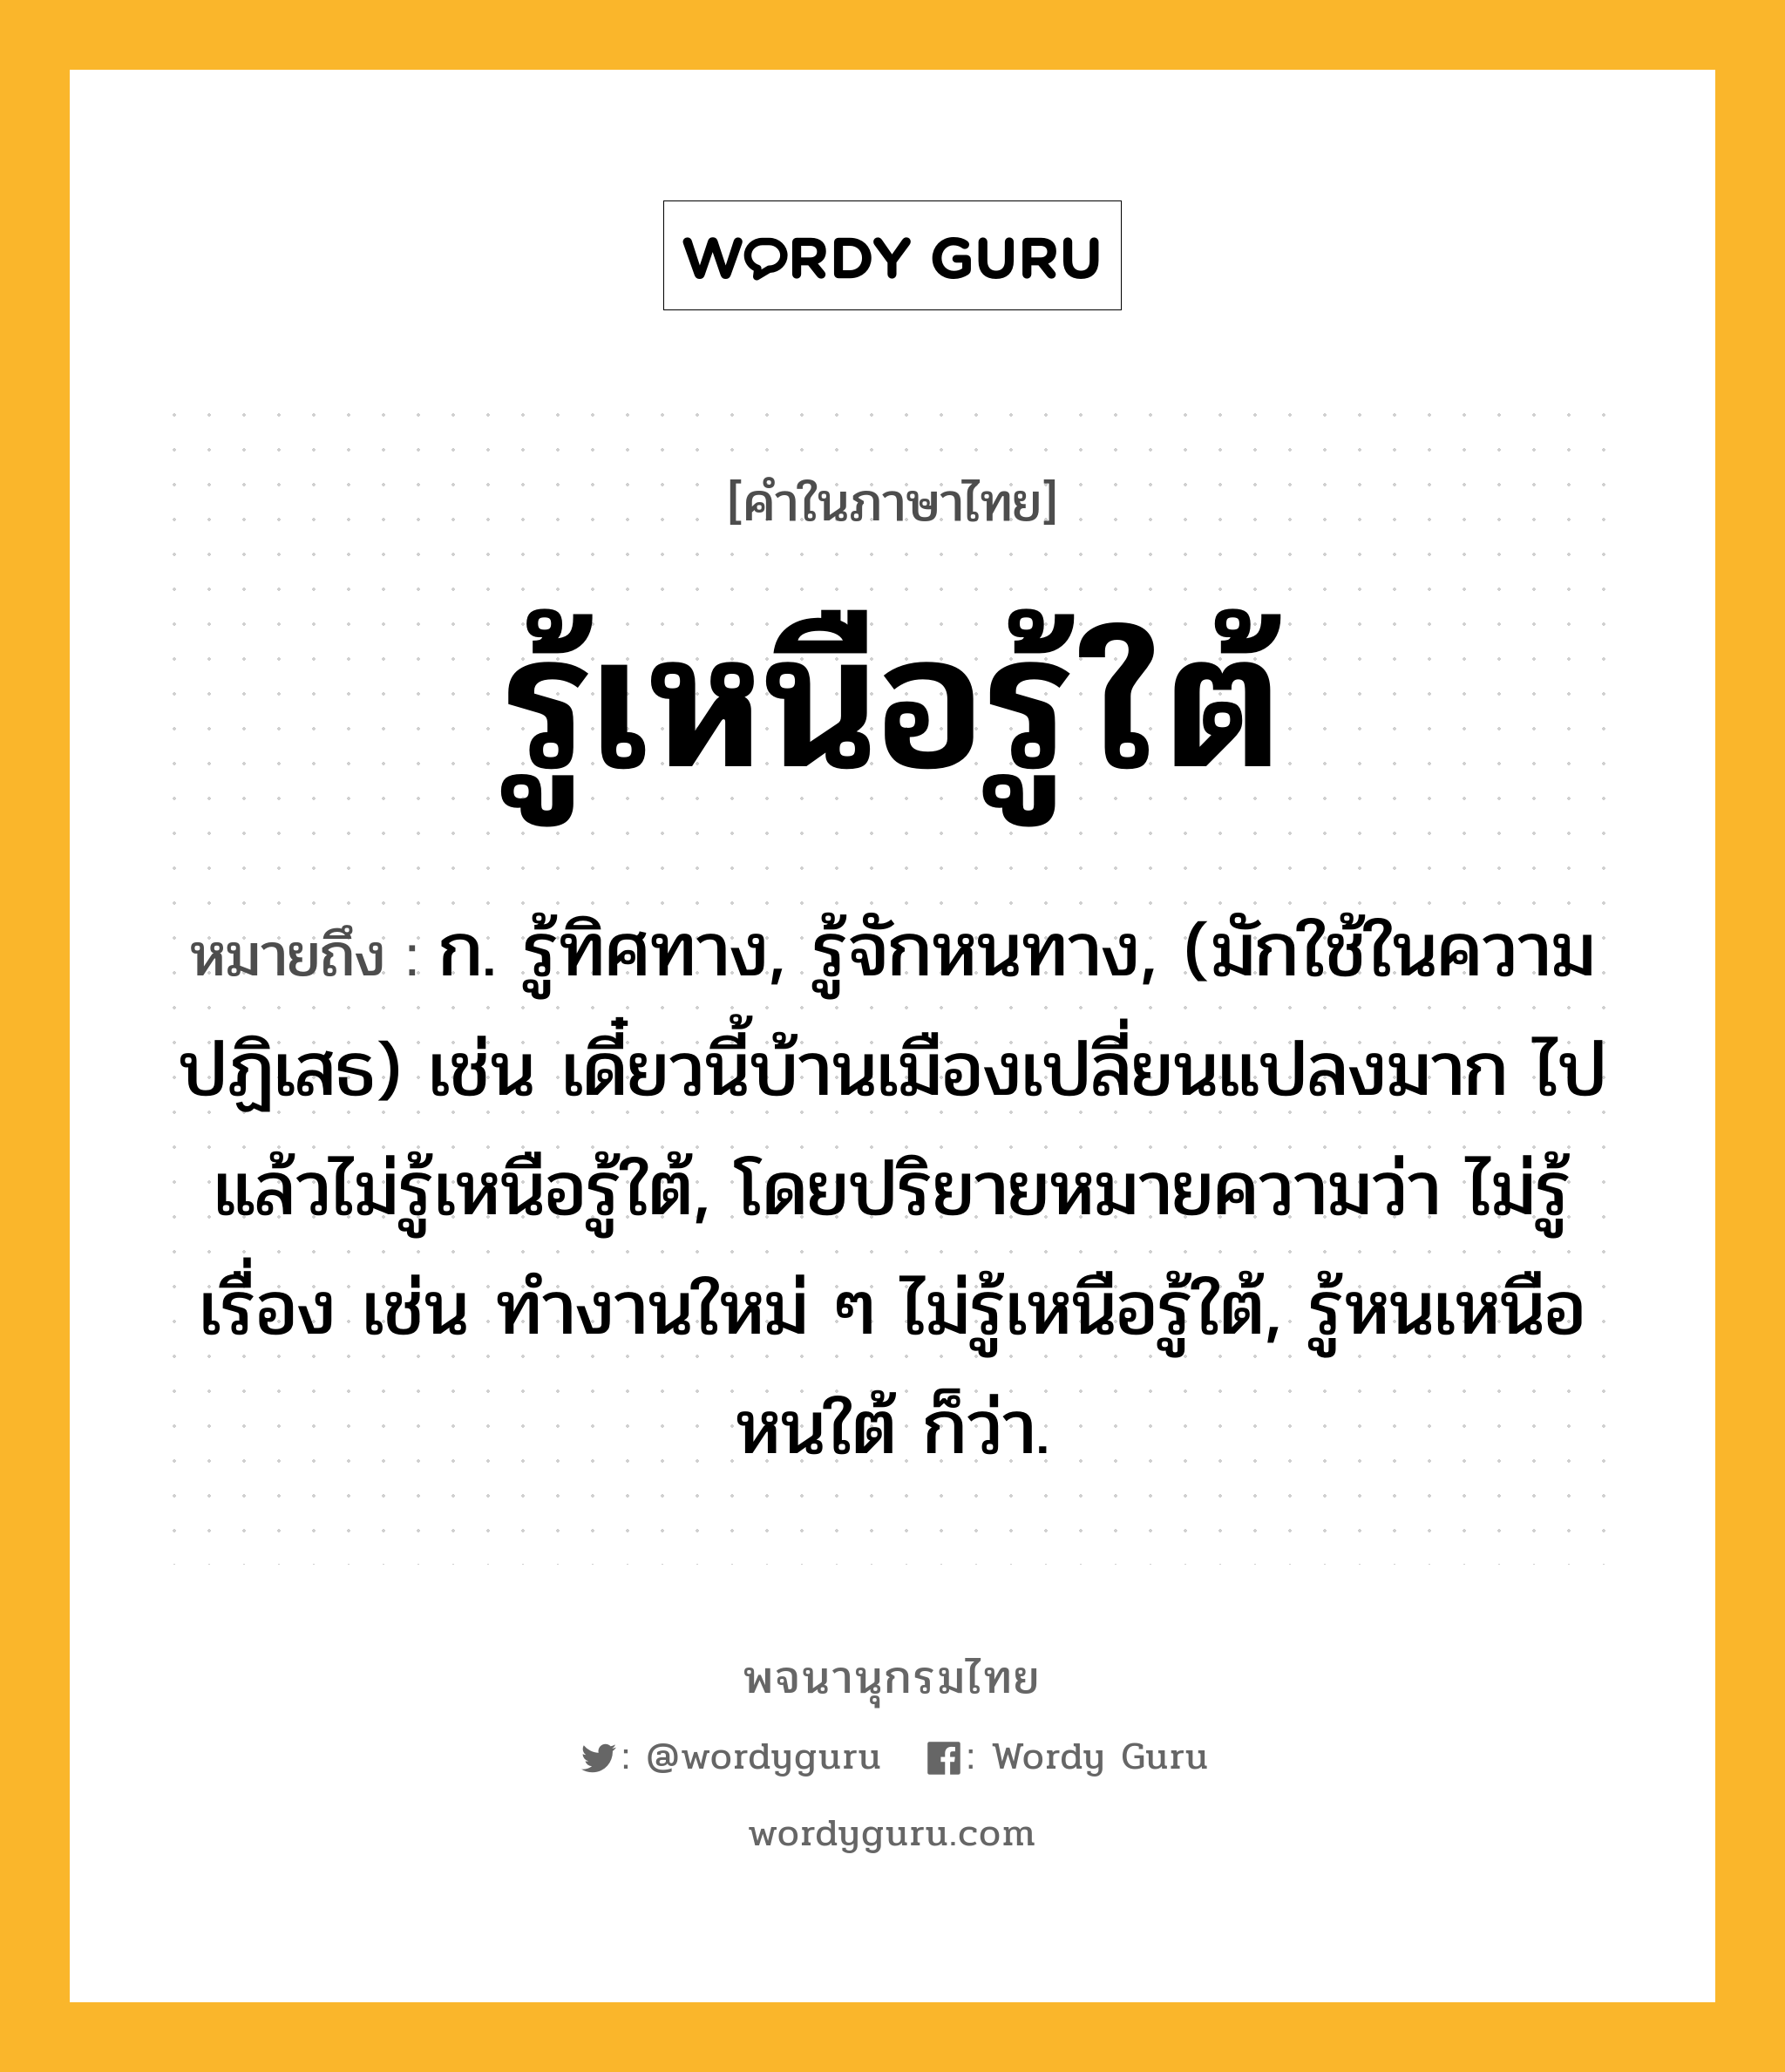 รู้เหนือรู้ใต้ หมายถึงอะไร?, คำในภาษาไทย รู้เหนือรู้ใต้ หมายถึง ก. รู้ทิศทาง, รู้จักหนทาง, (มักใช้ในความปฏิเสธ) เช่น เดี๋ยวนี้บ้านเมืองเปลี่ยนแปลงมาก ไปแล้วไม่รู้เหนือรู้ใต้, โดยปริยายหมายความว่า ไม่รู้เรื่อง เช่น ทำงานใหม่ ๆ ไม่รู้เหนือรู้ใต้, รู้หนเหนือหนใต้ ก็ว่า.